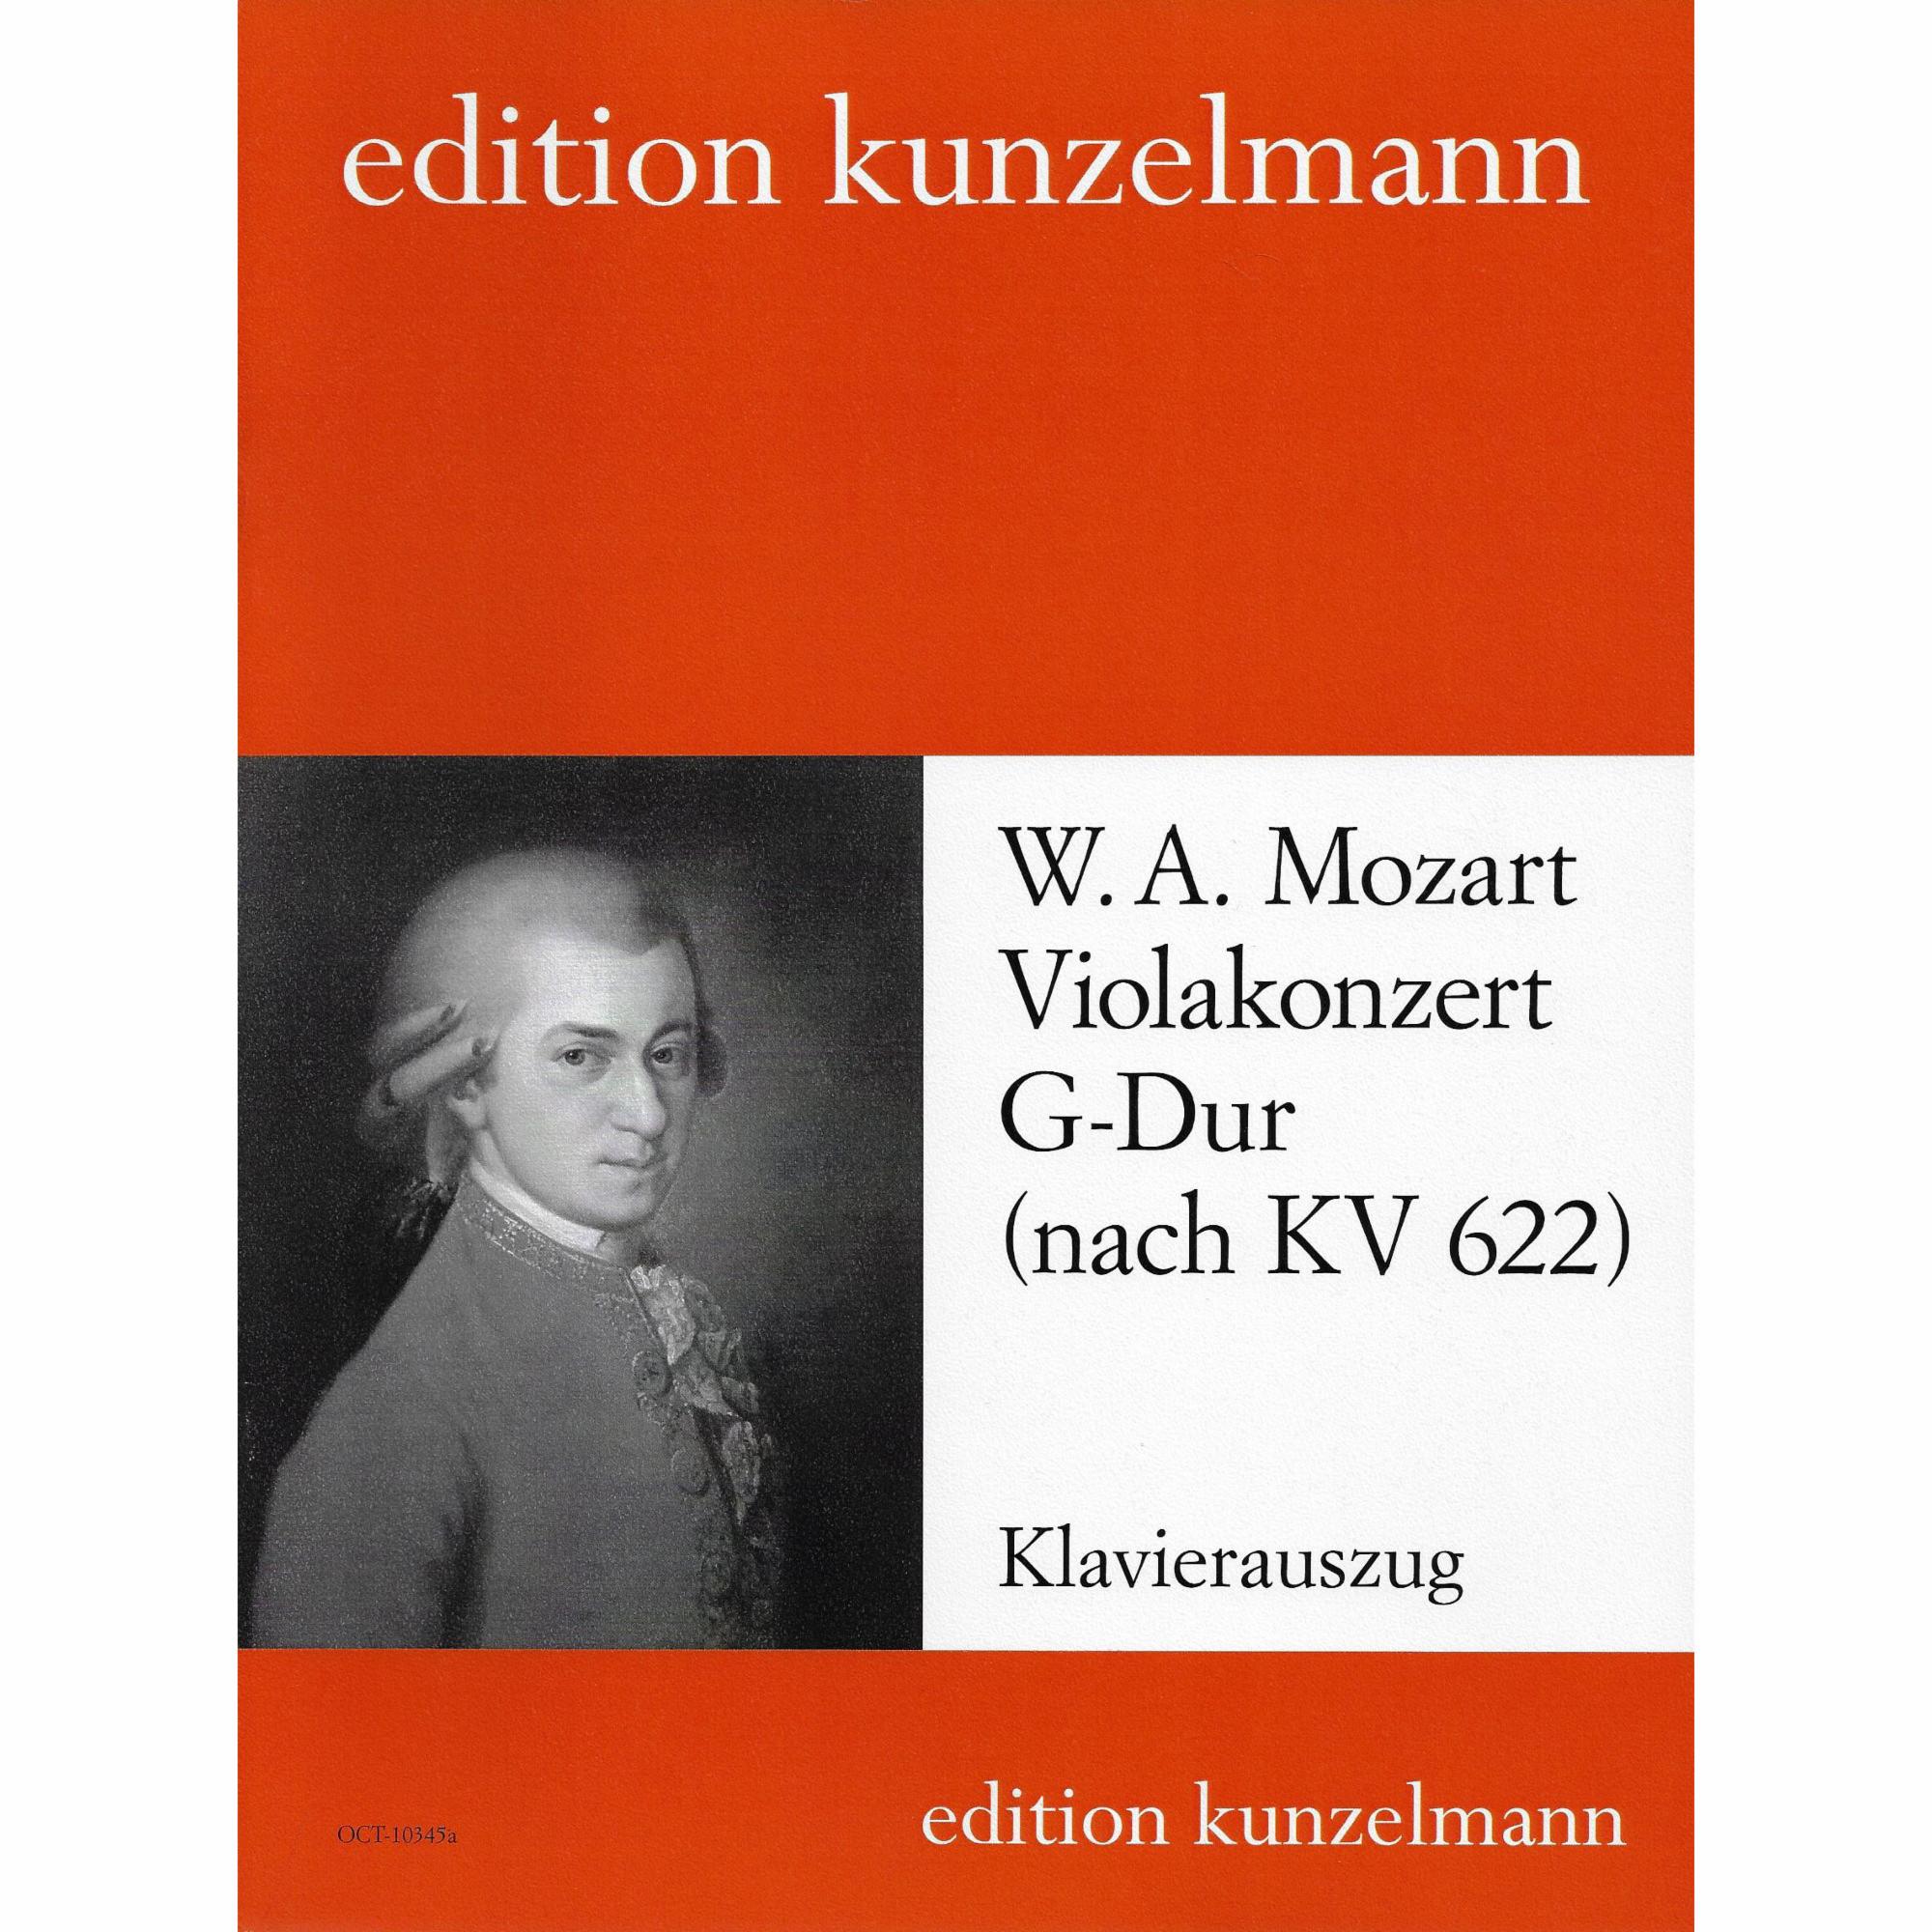 Mozart -- Viola Concerto in G Major, after K. 622